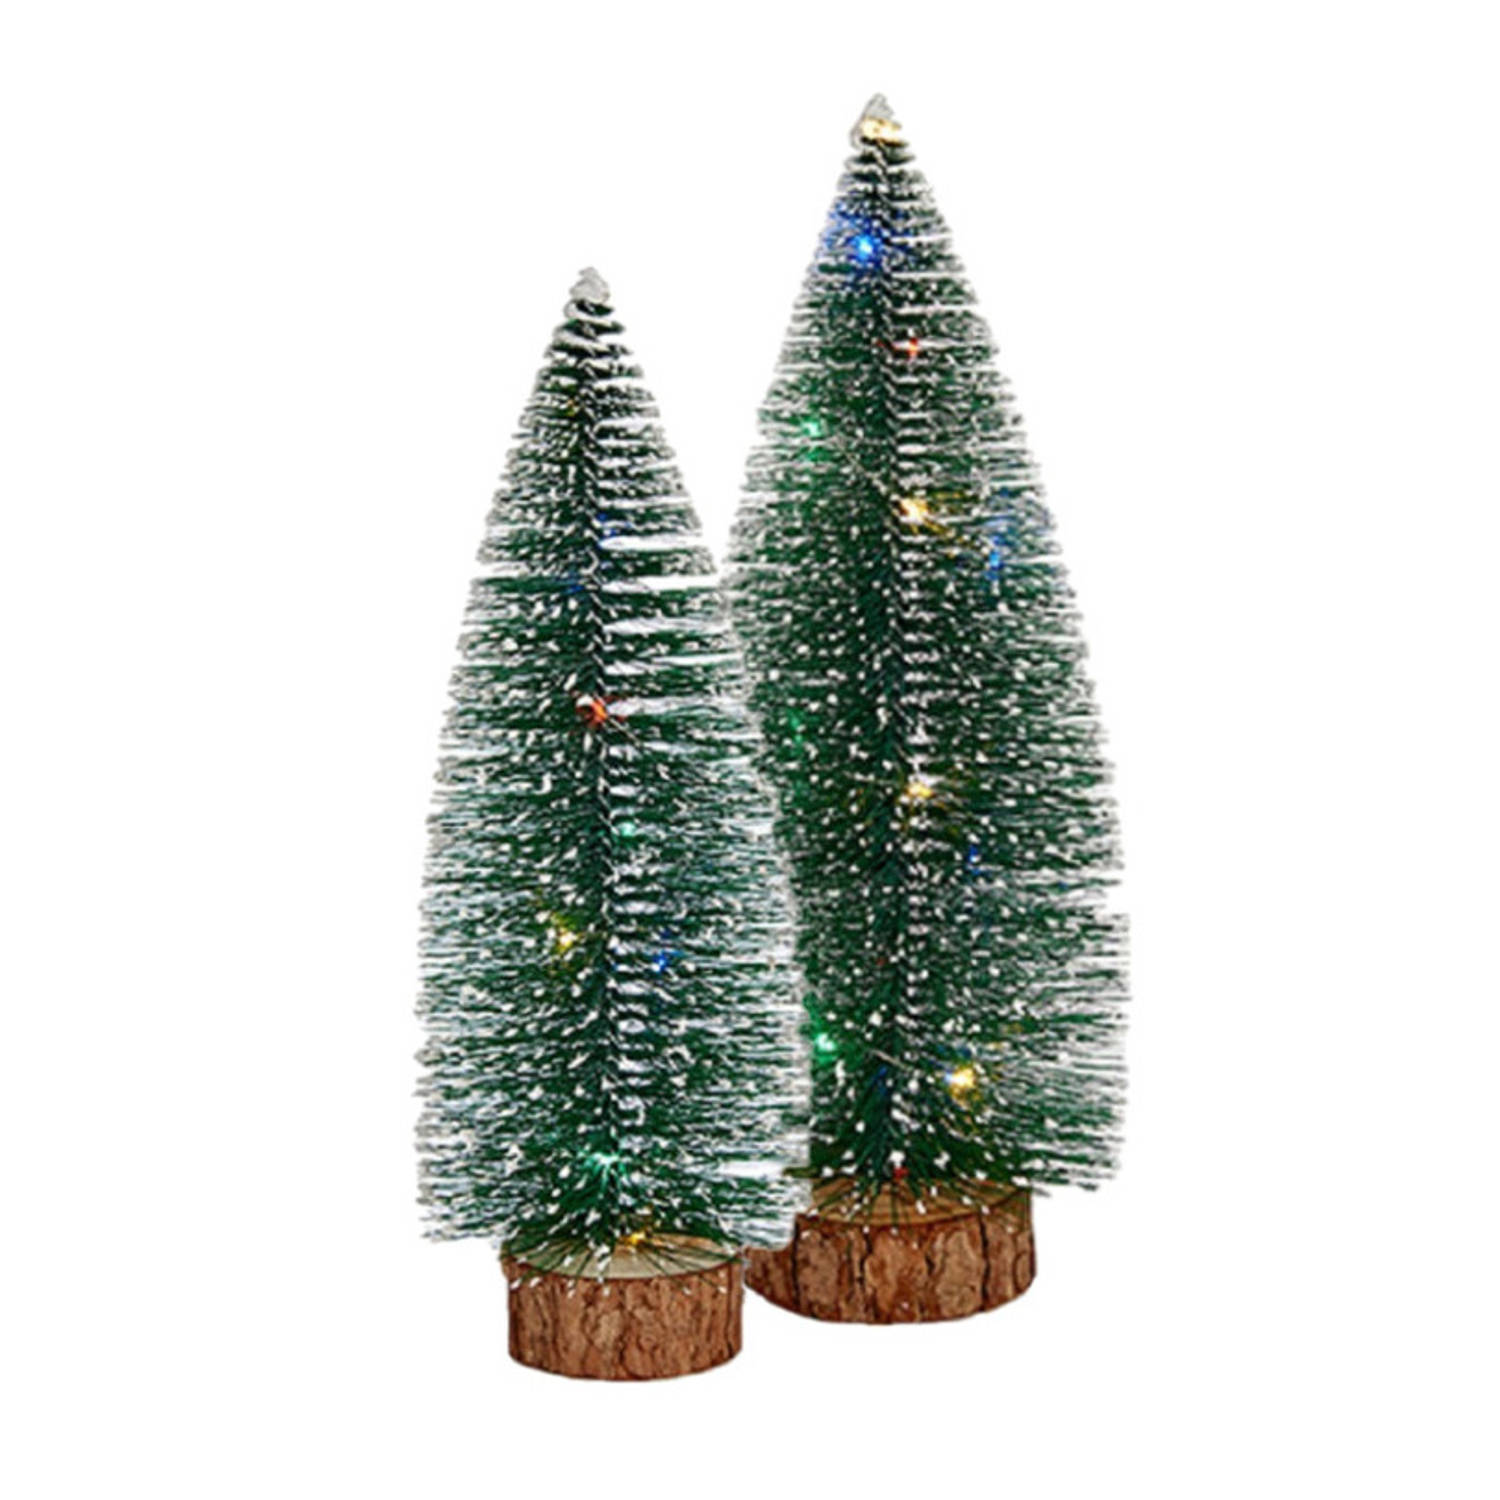 Kleine-mini Decoratie Kerstboompjes Set Van 2x St Met Gekleurd Licht 30-35 Cm Kerstdorpen